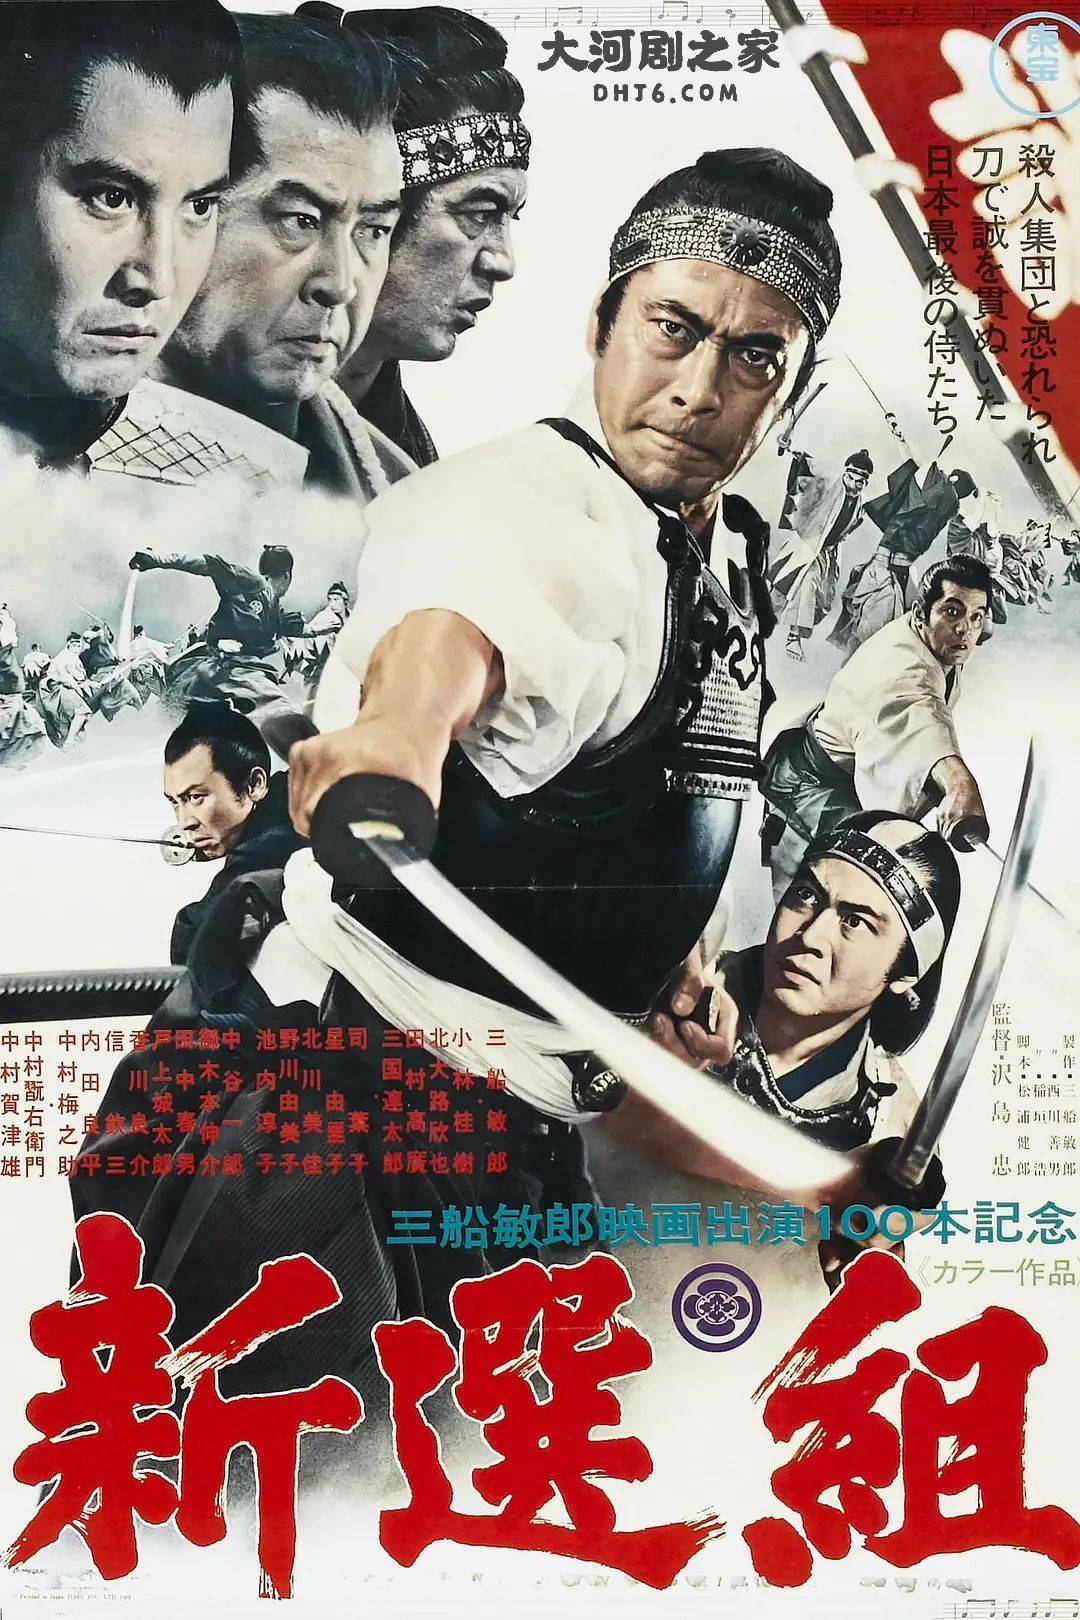 这部电影以江户时代末期著名的武士团体——新选组为背景,通过一系列